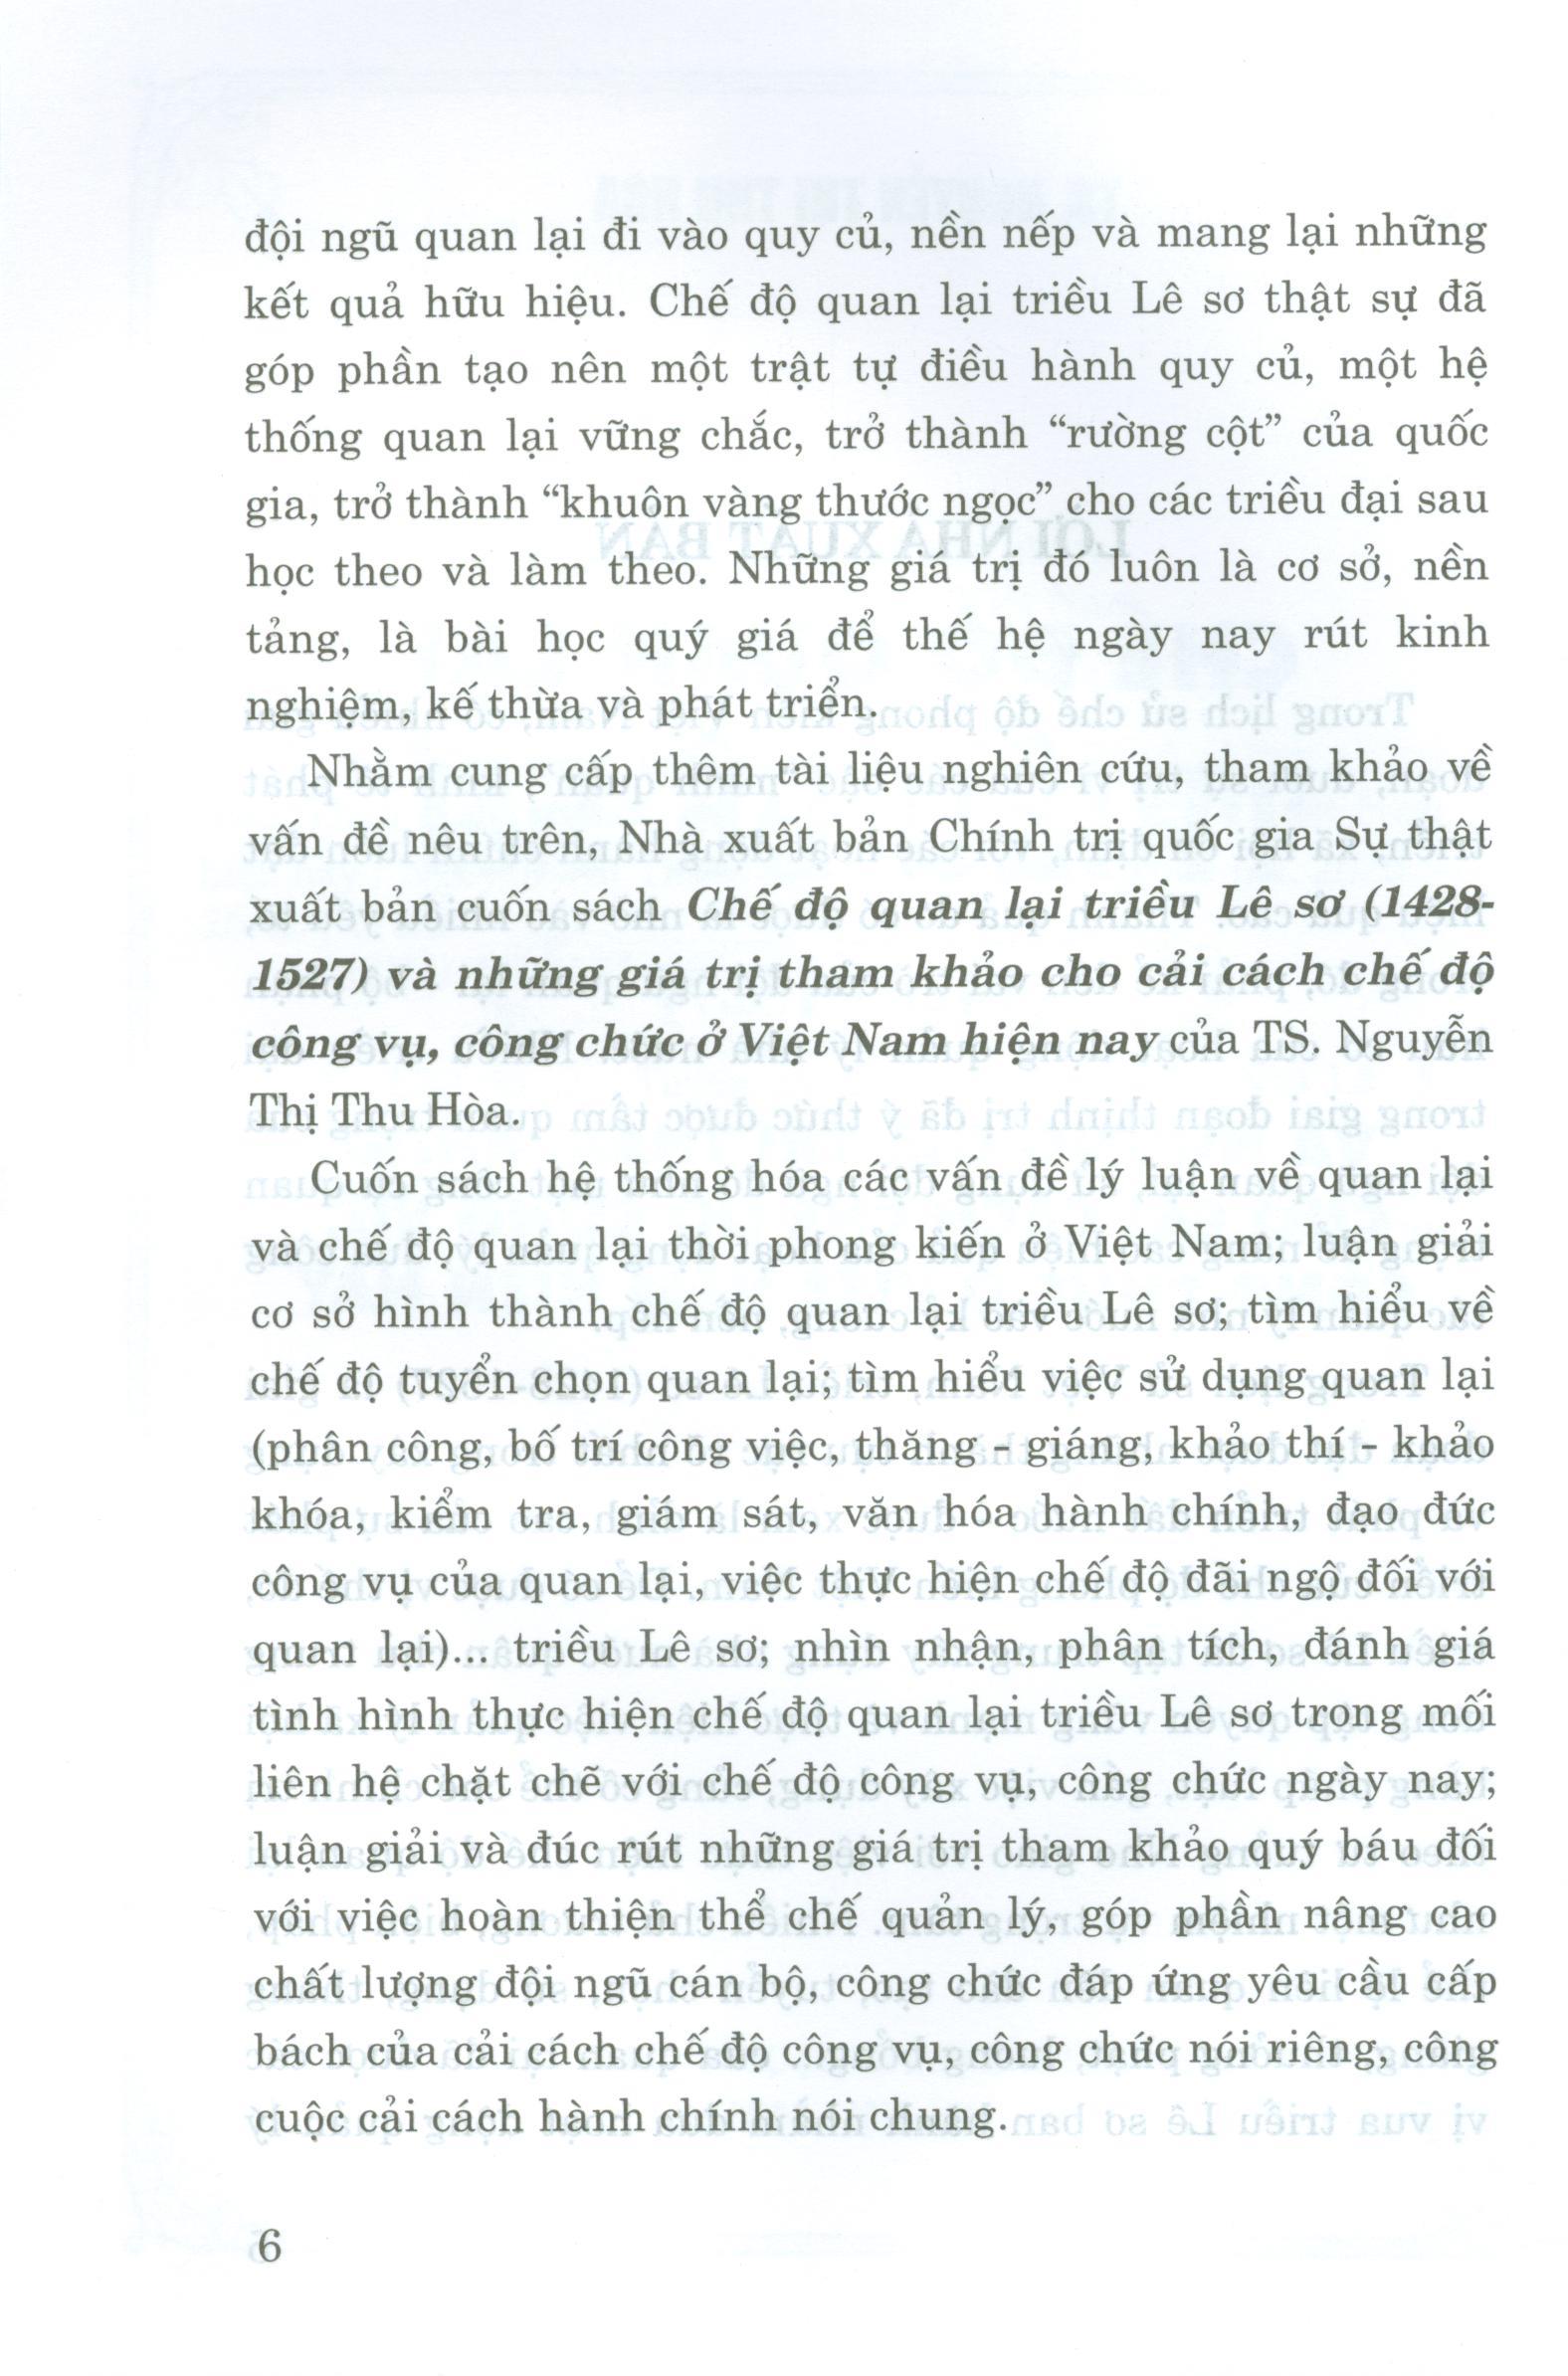 Chế Độ Quan Lại Triều Lê Sơ (1428-1527) Và Những Giá Trị Tham Khảo Cho Cải Cách Chế Độ Công Vụ, Công Chức Ở Việt Nam Hiện Nay